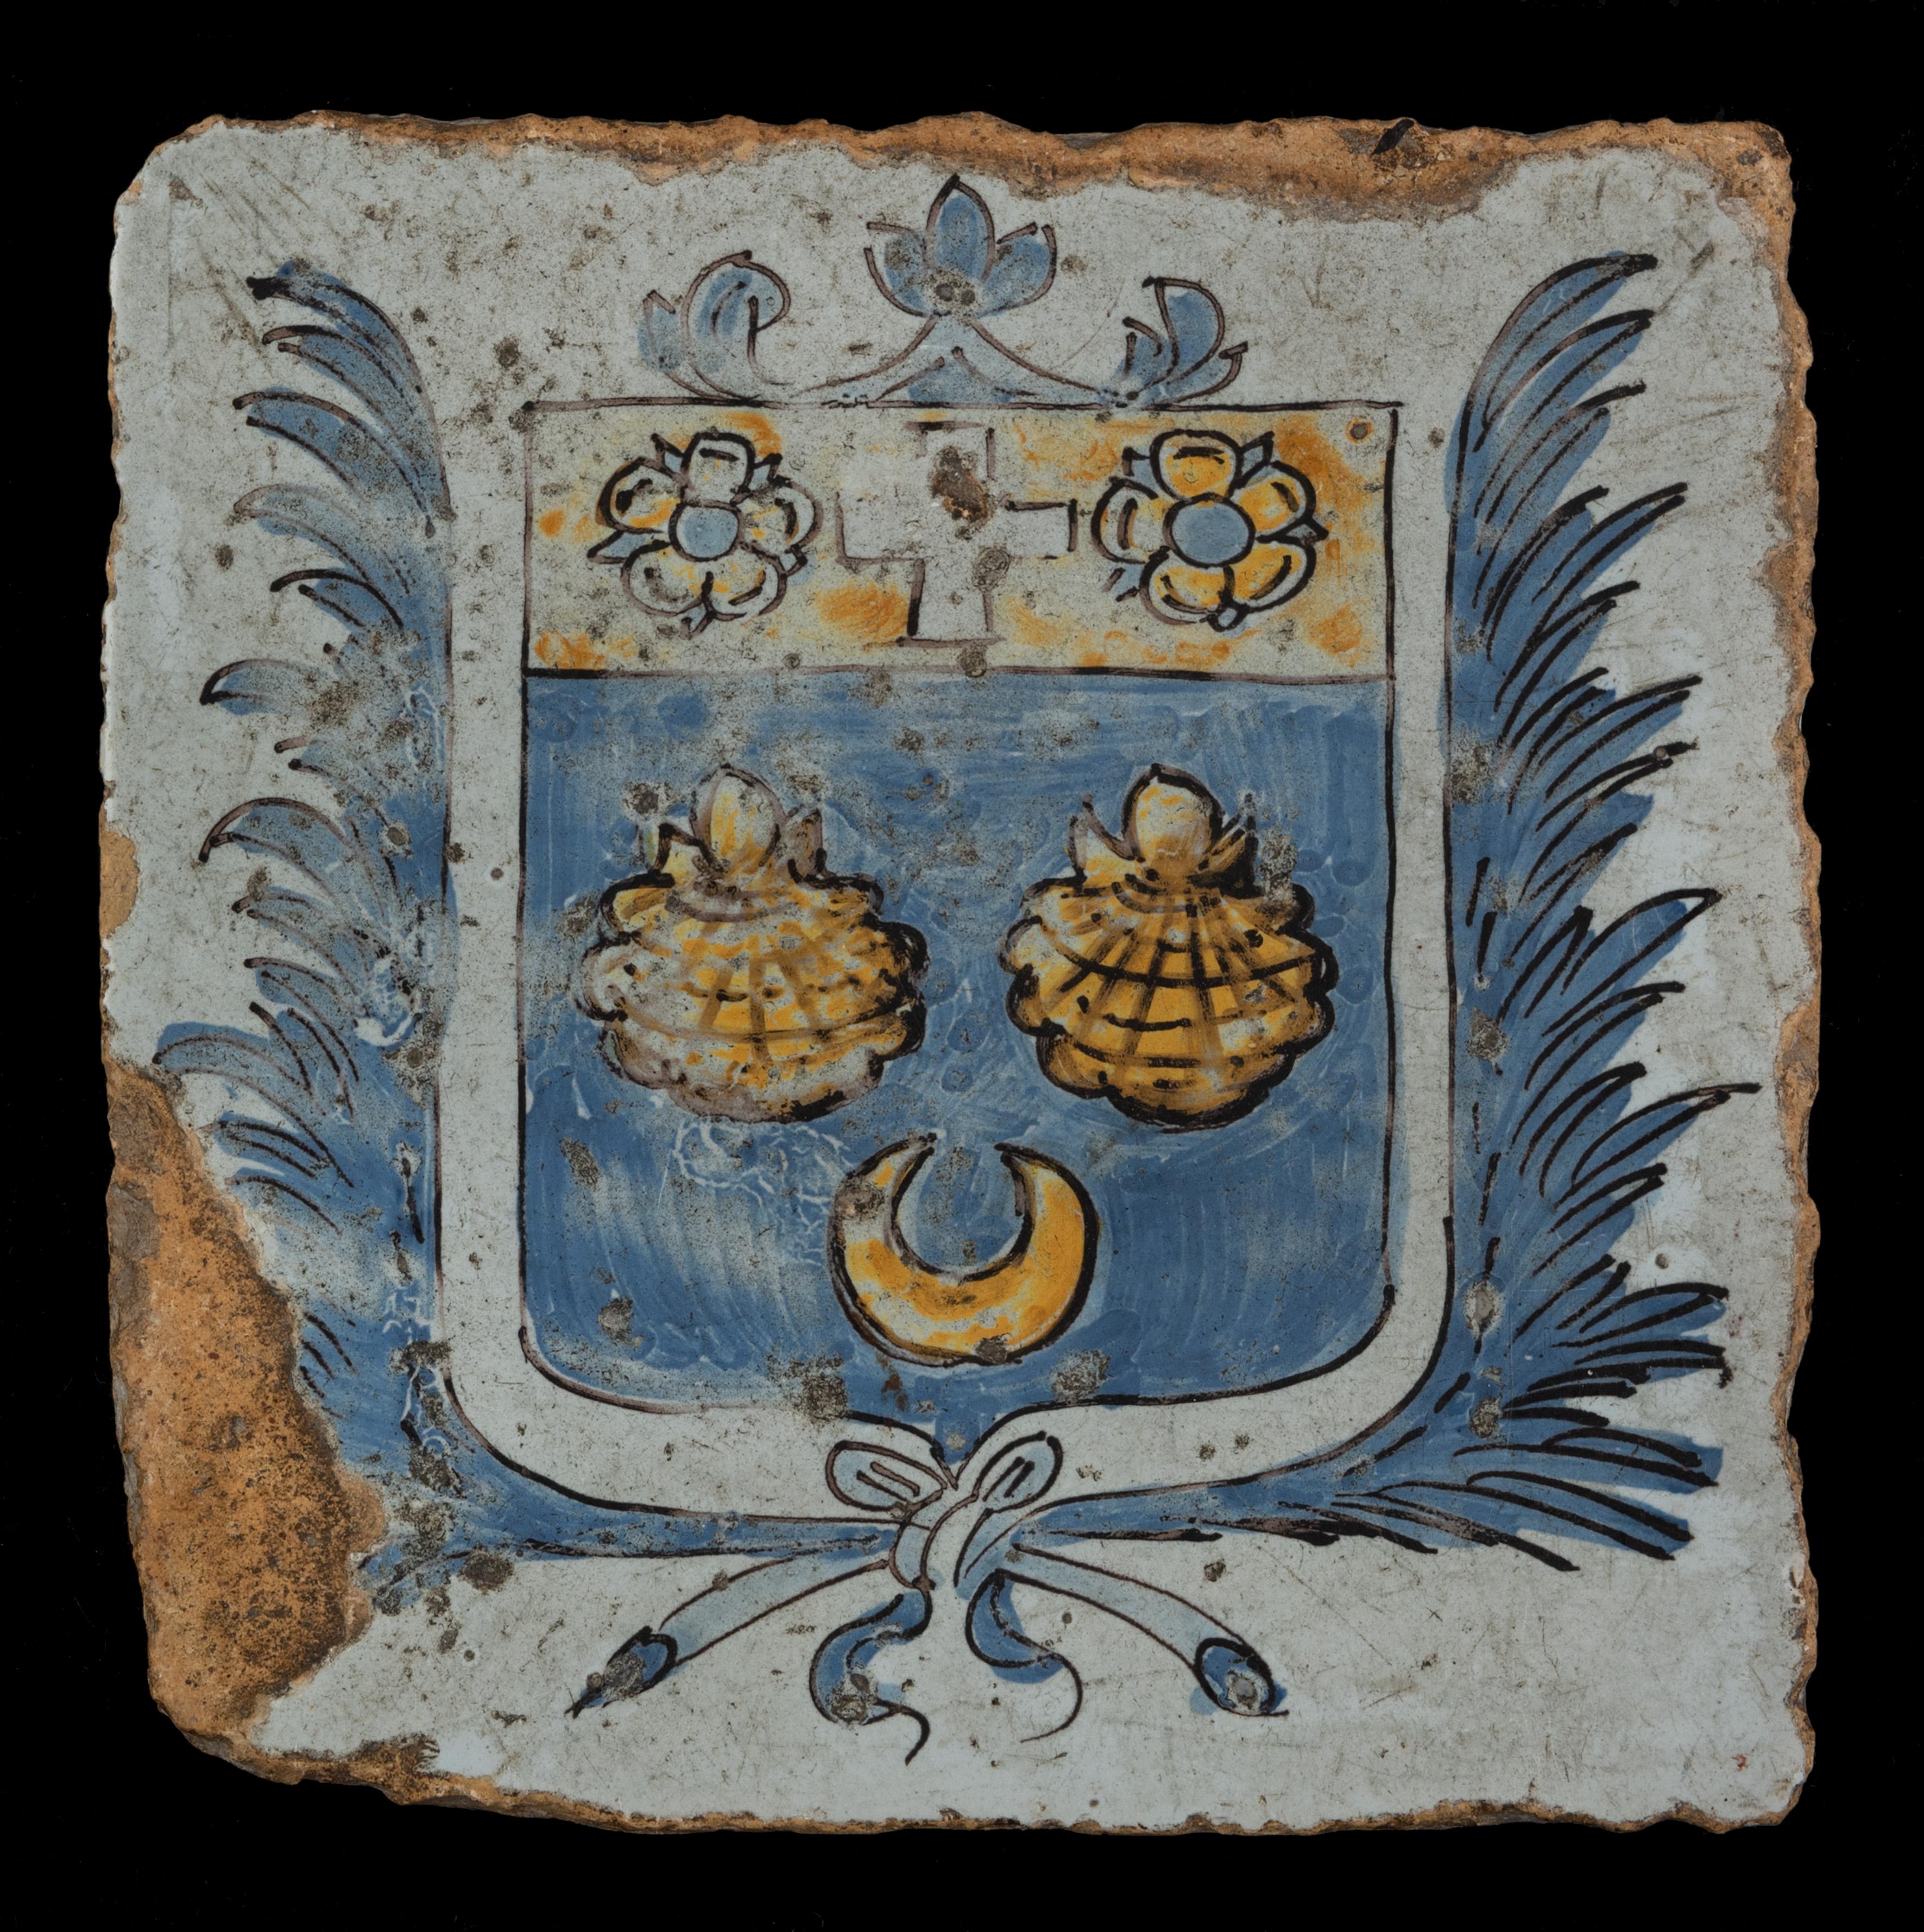 Seltene zinnglasierte Bodenfliese mit dem Wappen der Familie Montesquieu. Diese Fliese wurde um 1650 in Nevers, Frankreich, hergestellt. Ein wichtiges Mitglied dieser Familie war der französische Philosoph Charles Montesquieu (1689-1755). Geistiger